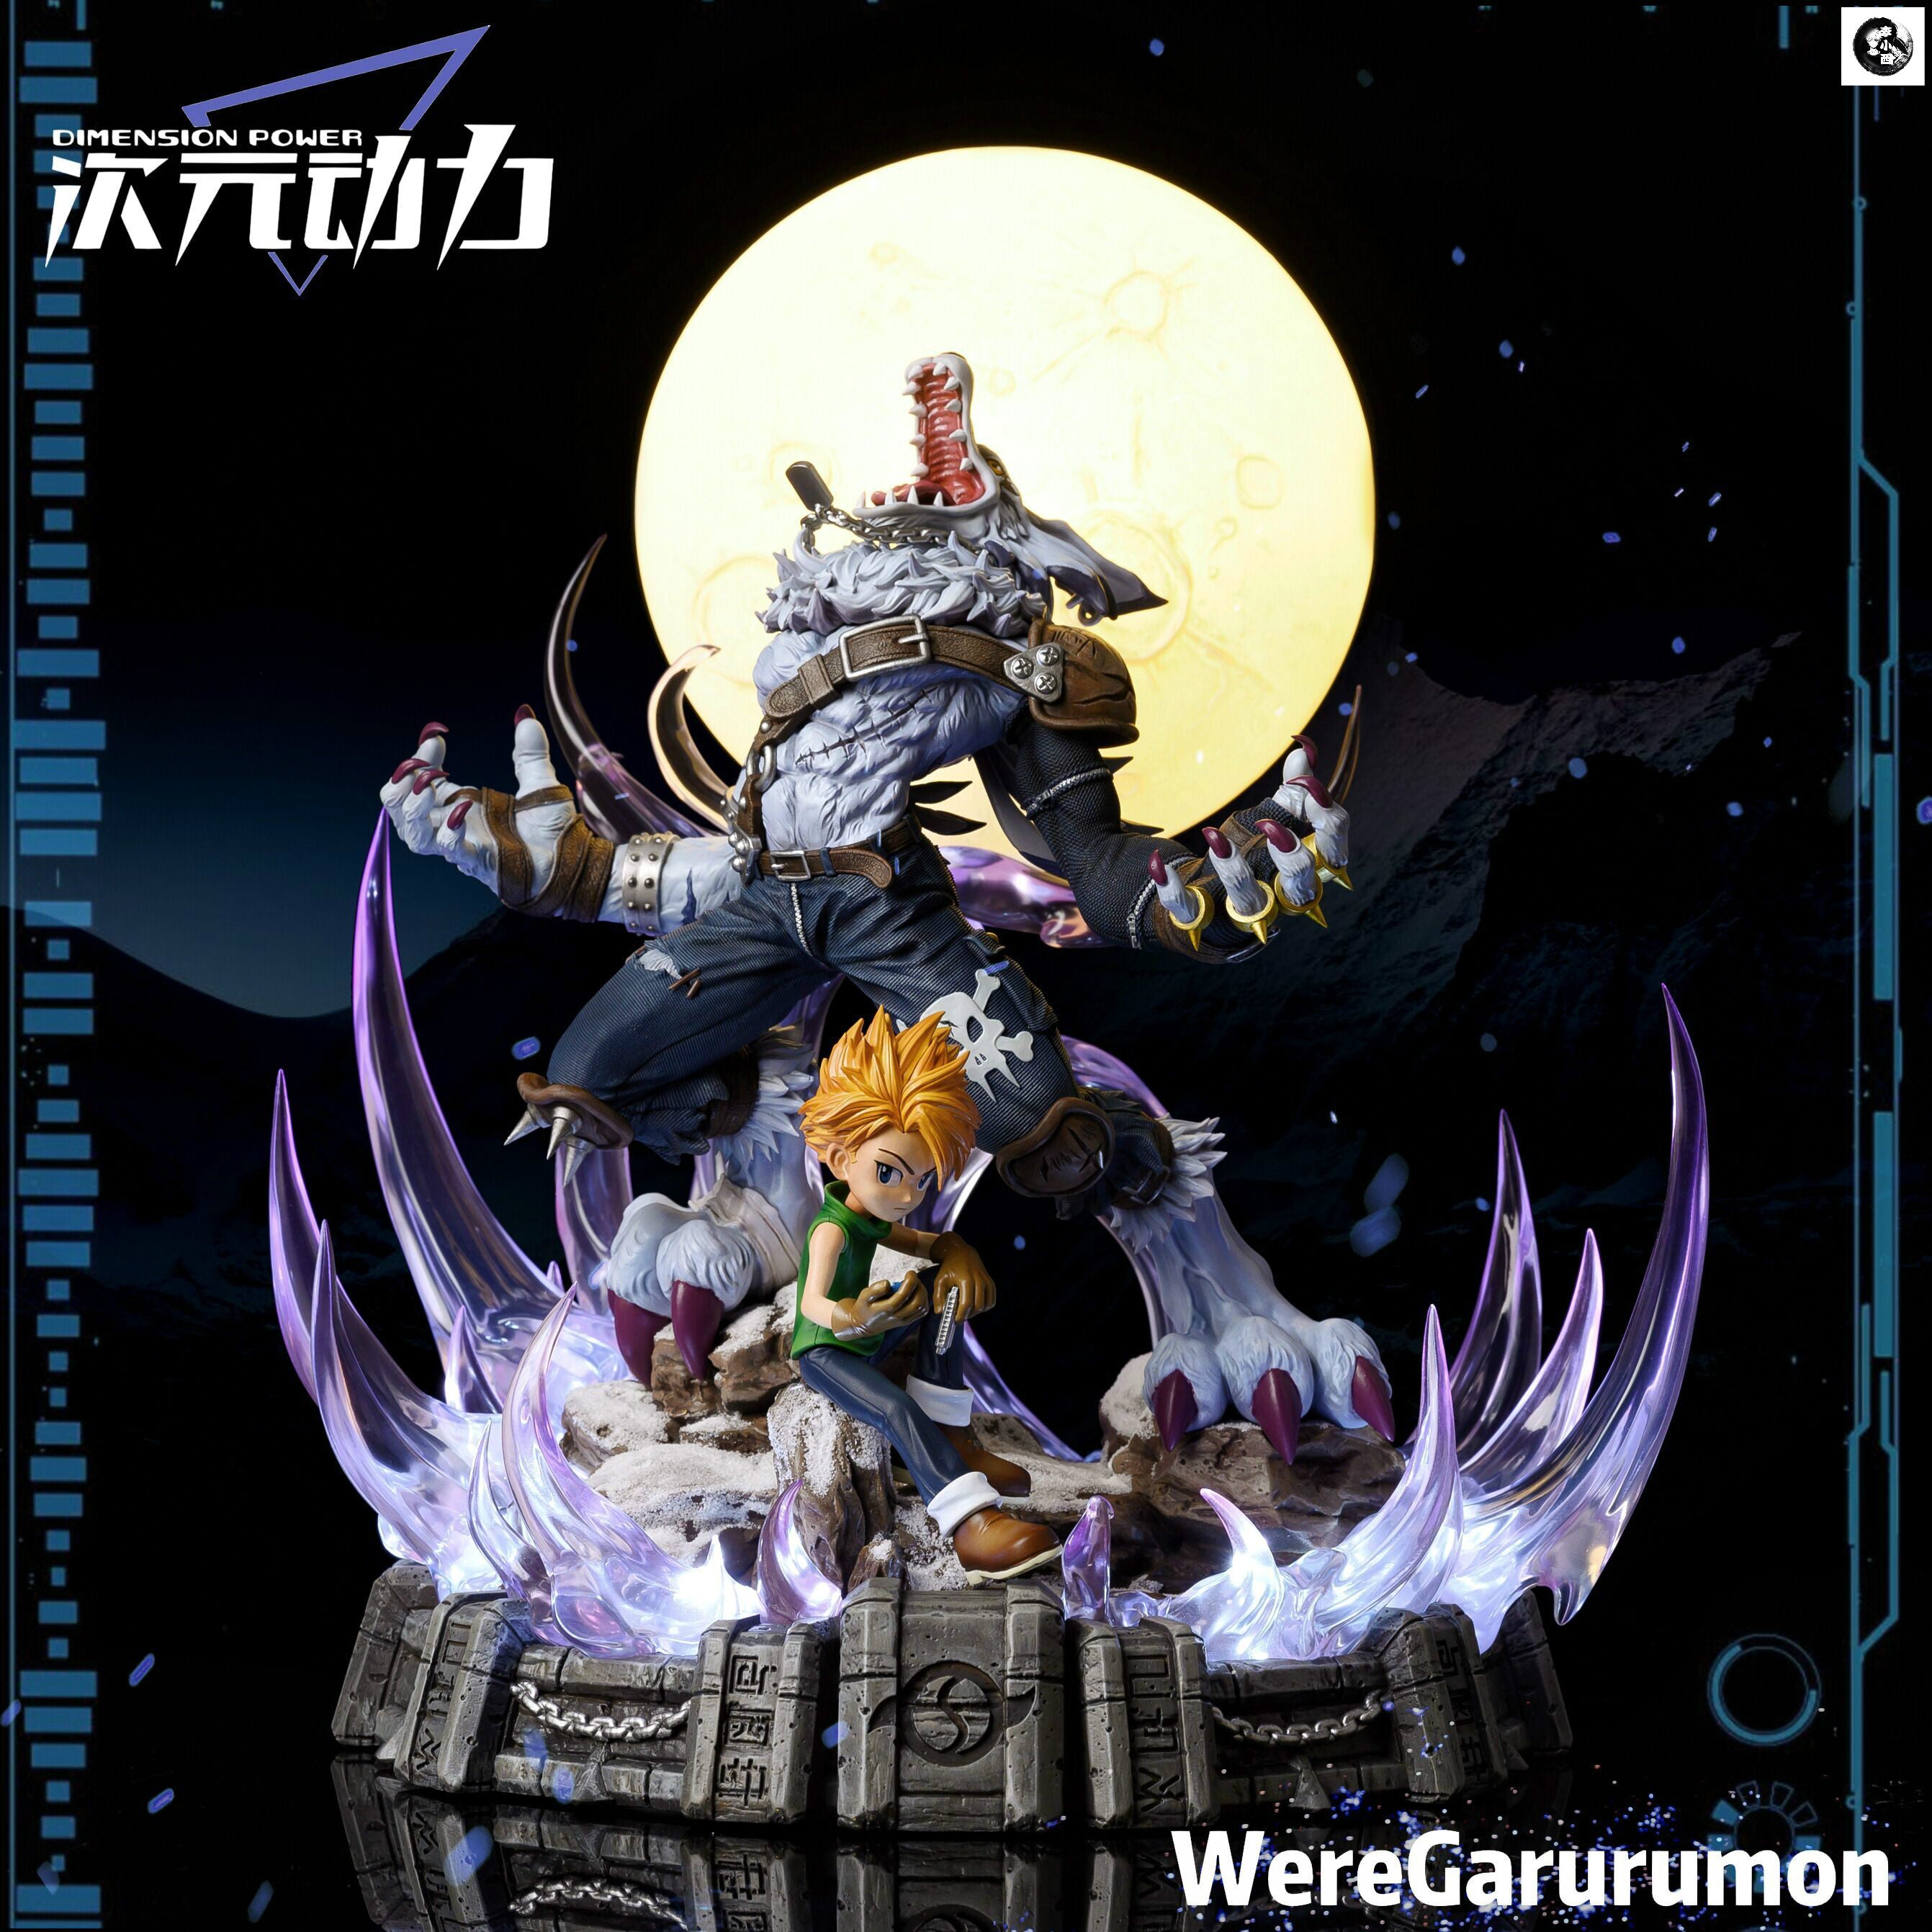 【In stock】Were Garurumon-Dimension Power Studio - weareanimecollectors